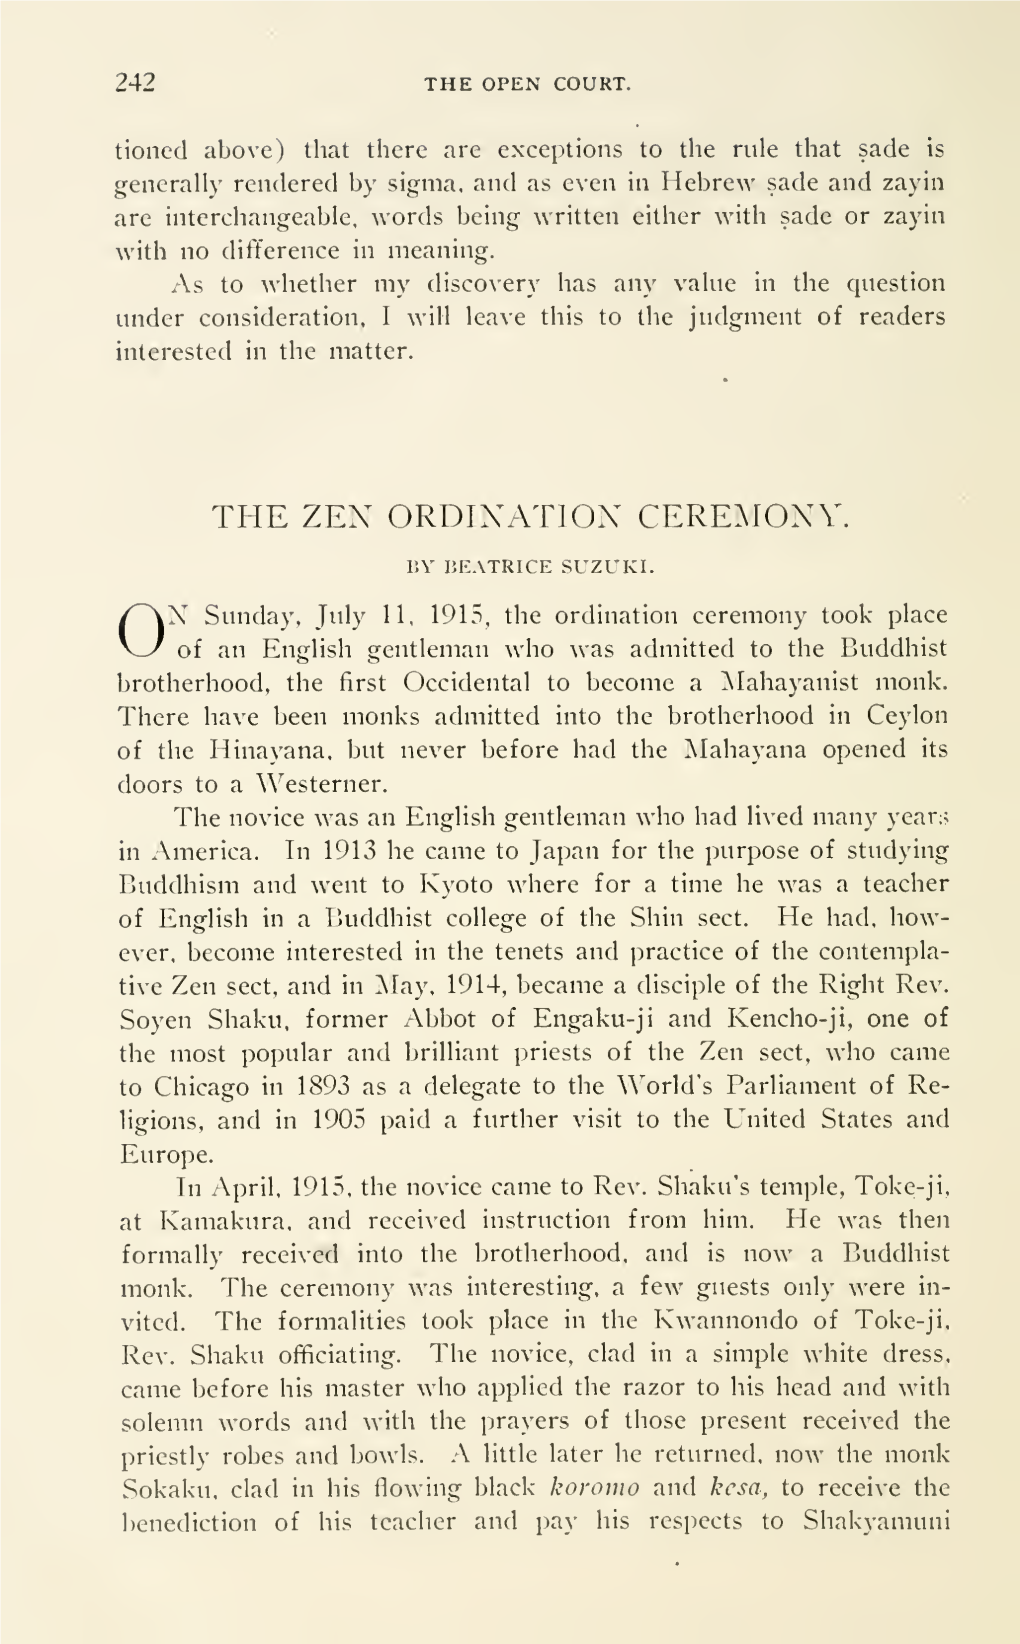 The Zen Ordination Ceremony. 243